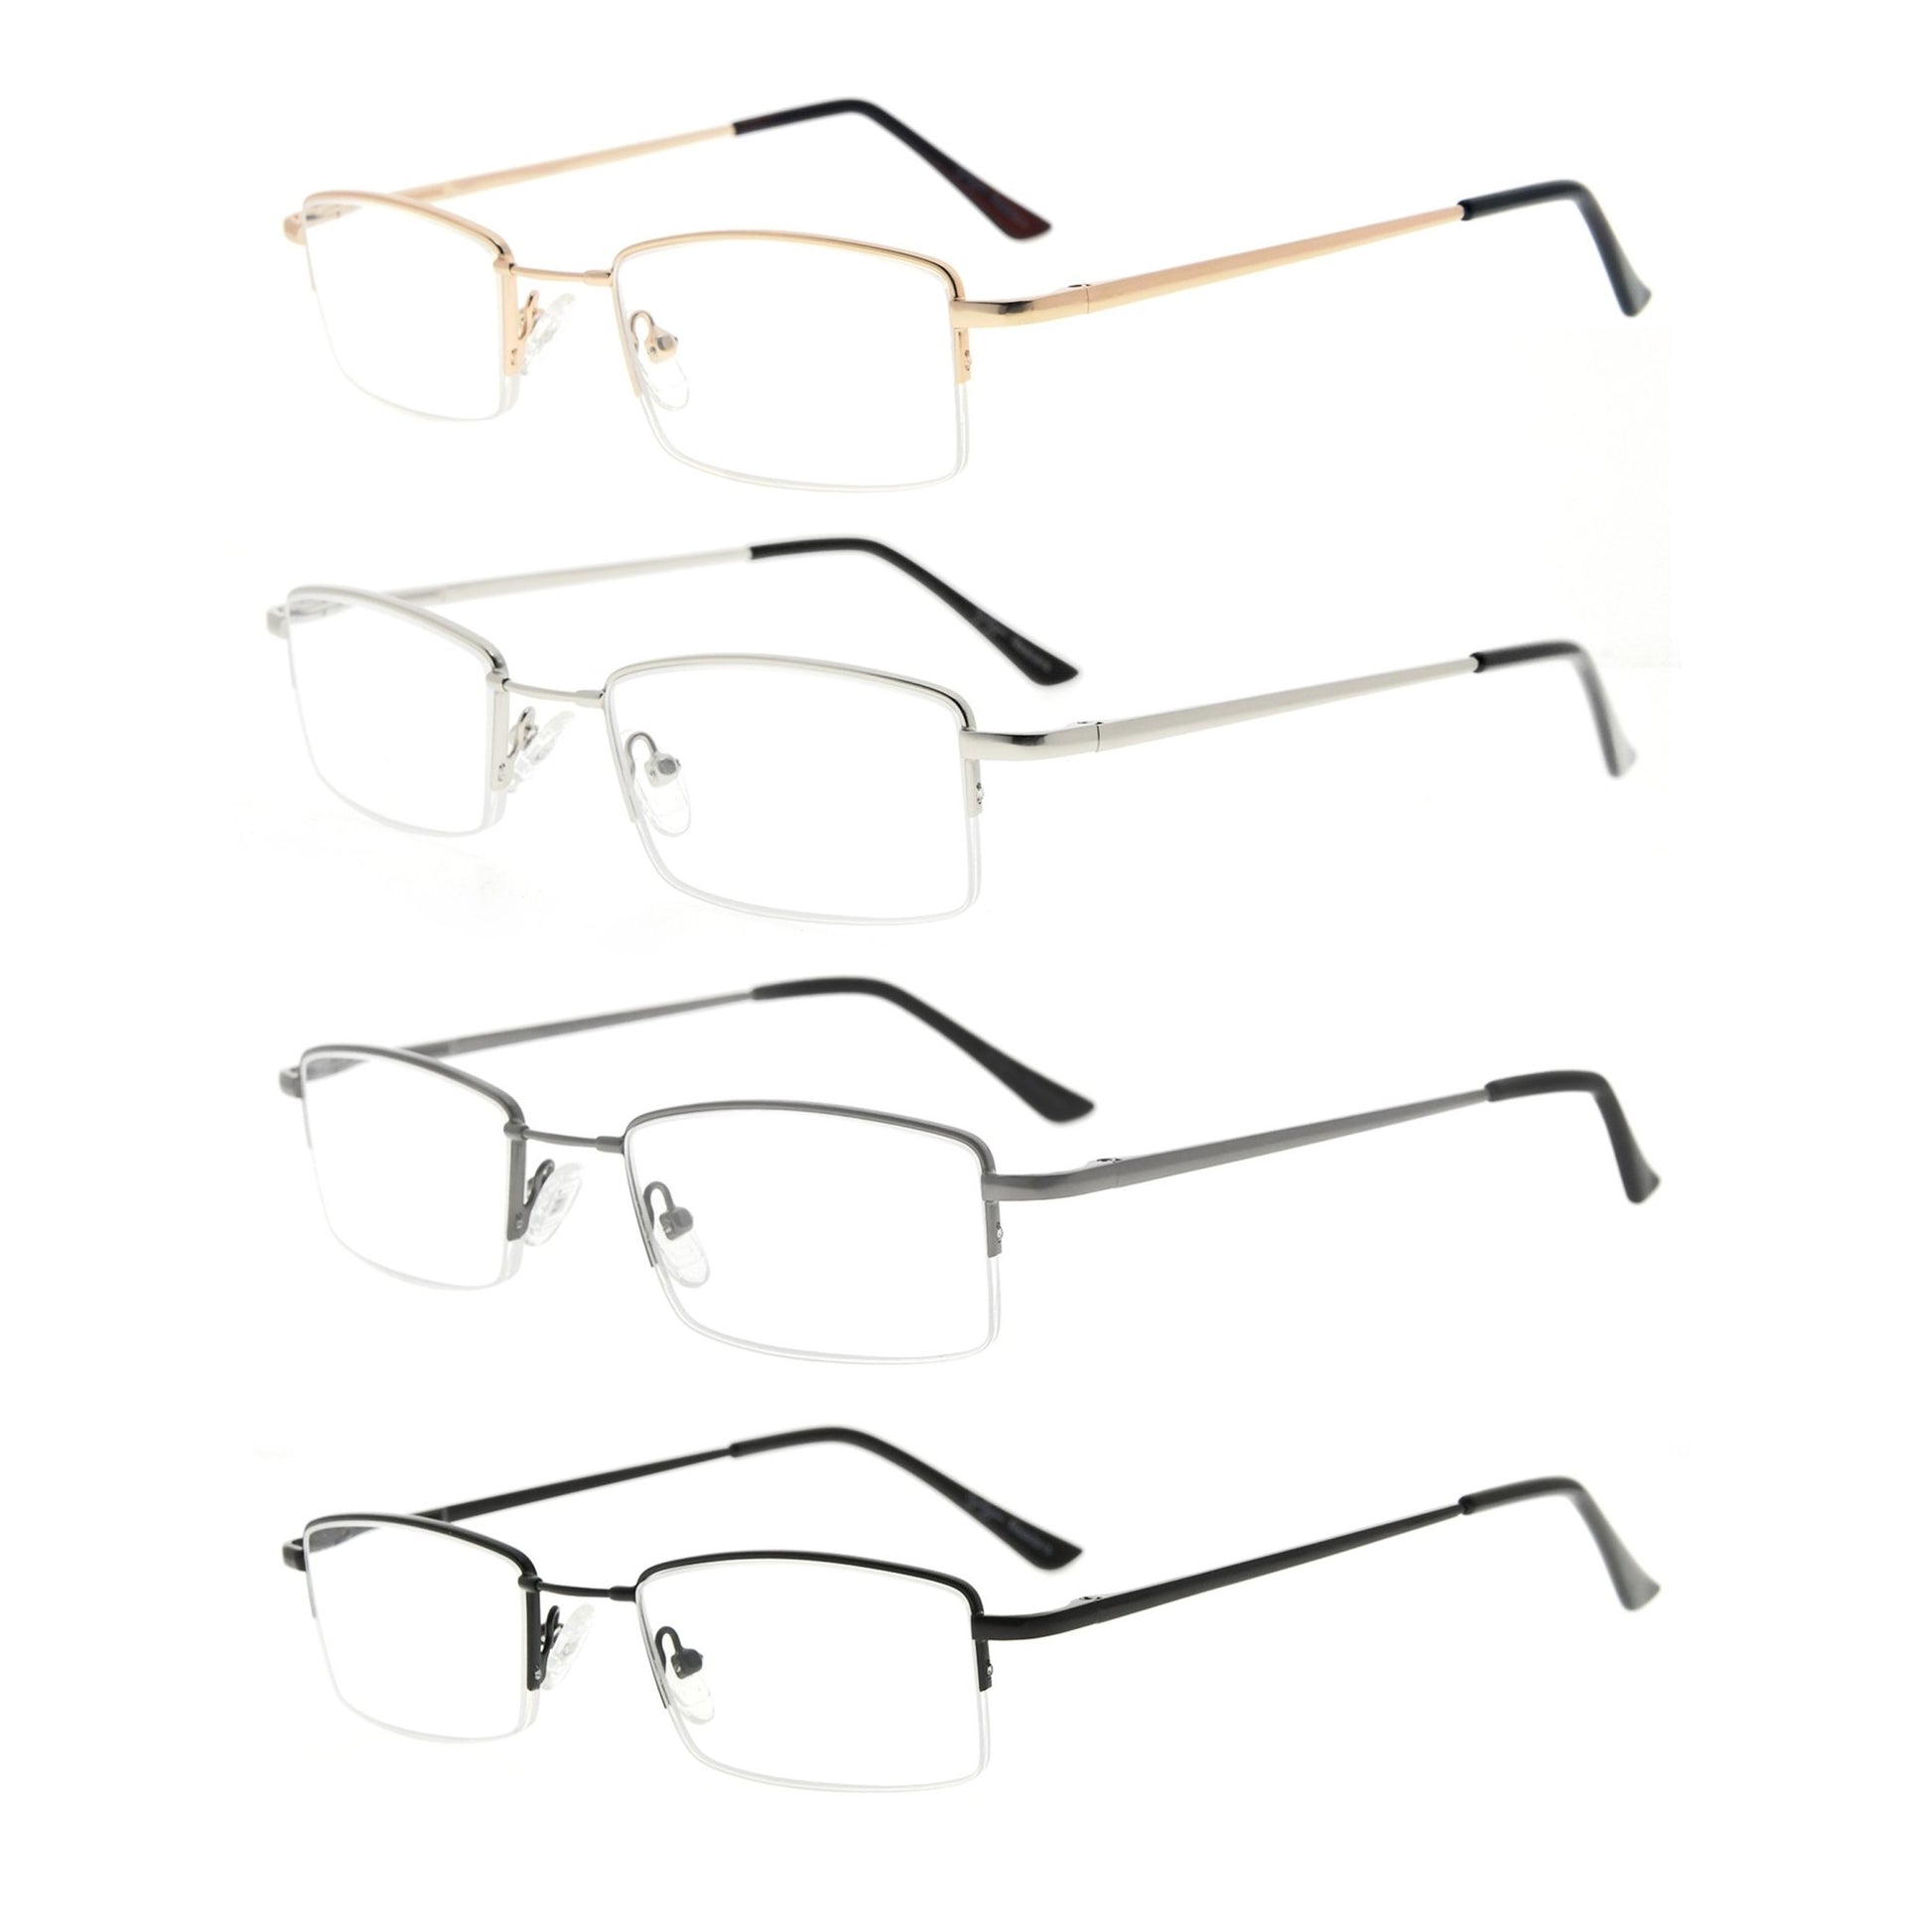 4 Pack Half-rim Reading Glasses with Titanium Bridge R1708